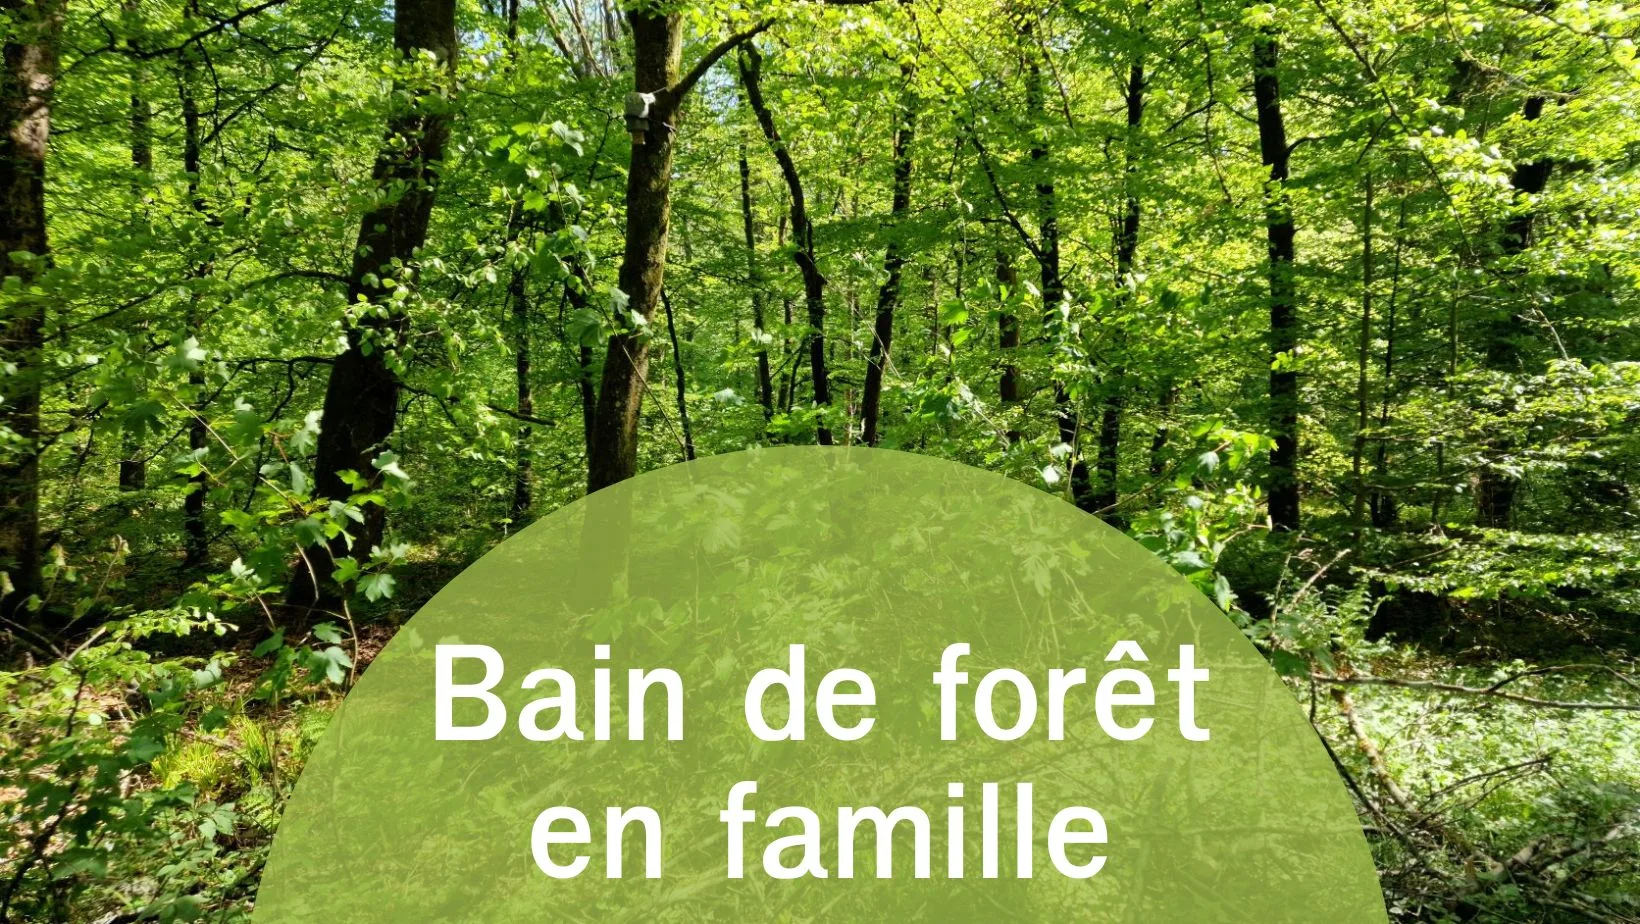 Annonce du bain de forêt en famille